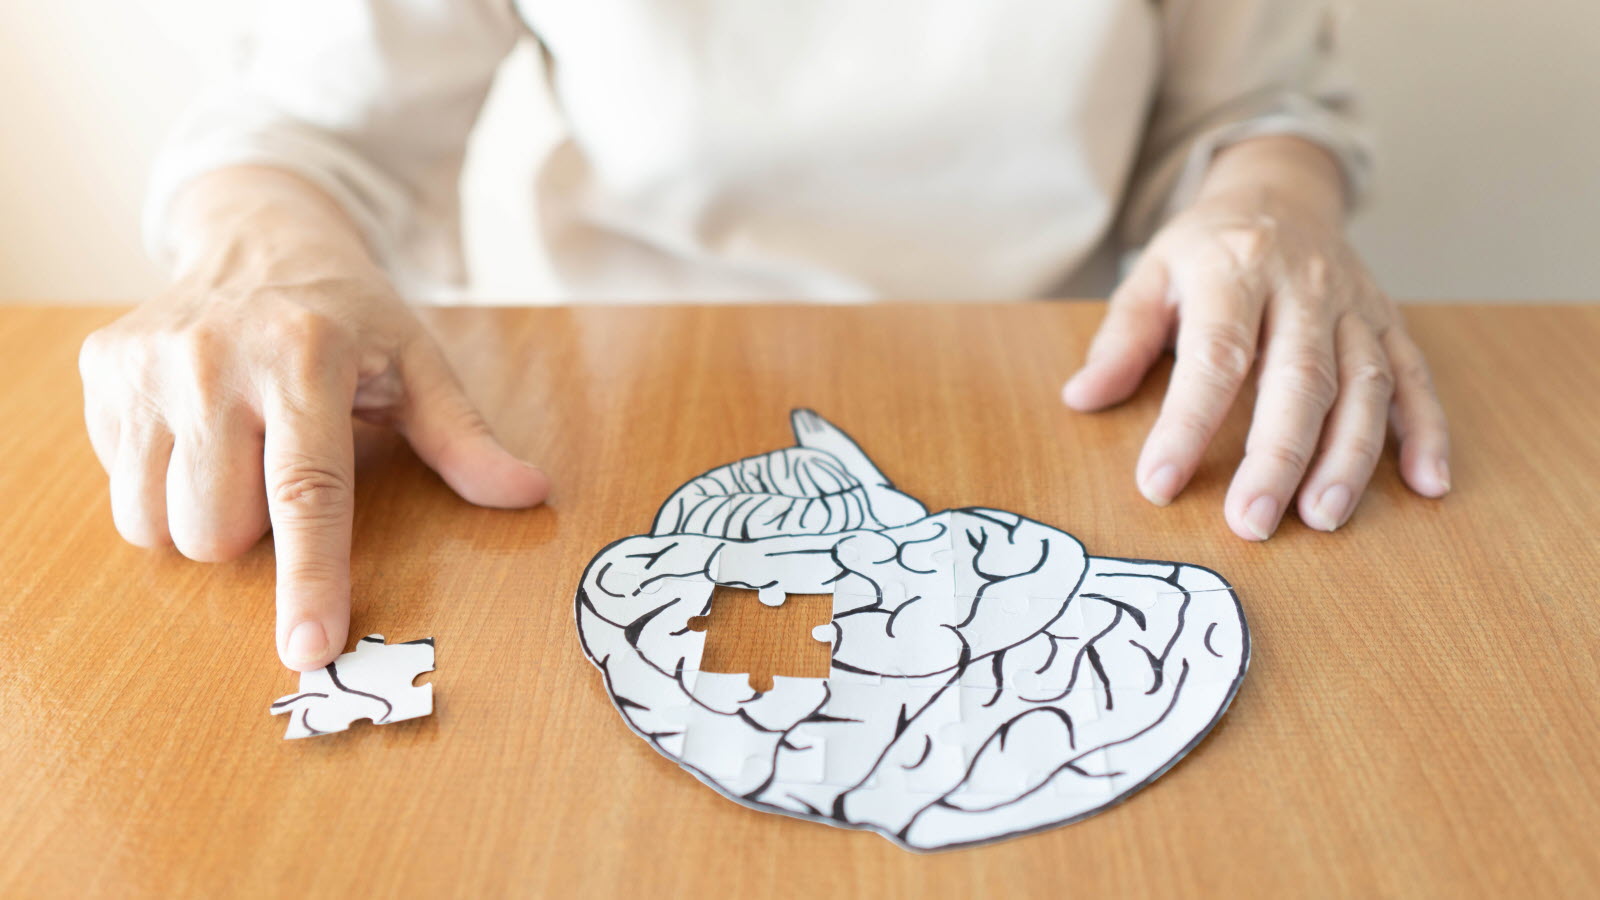 Les indices indiquant la fin de vie dans la progression de la maladie d’Alzheimer